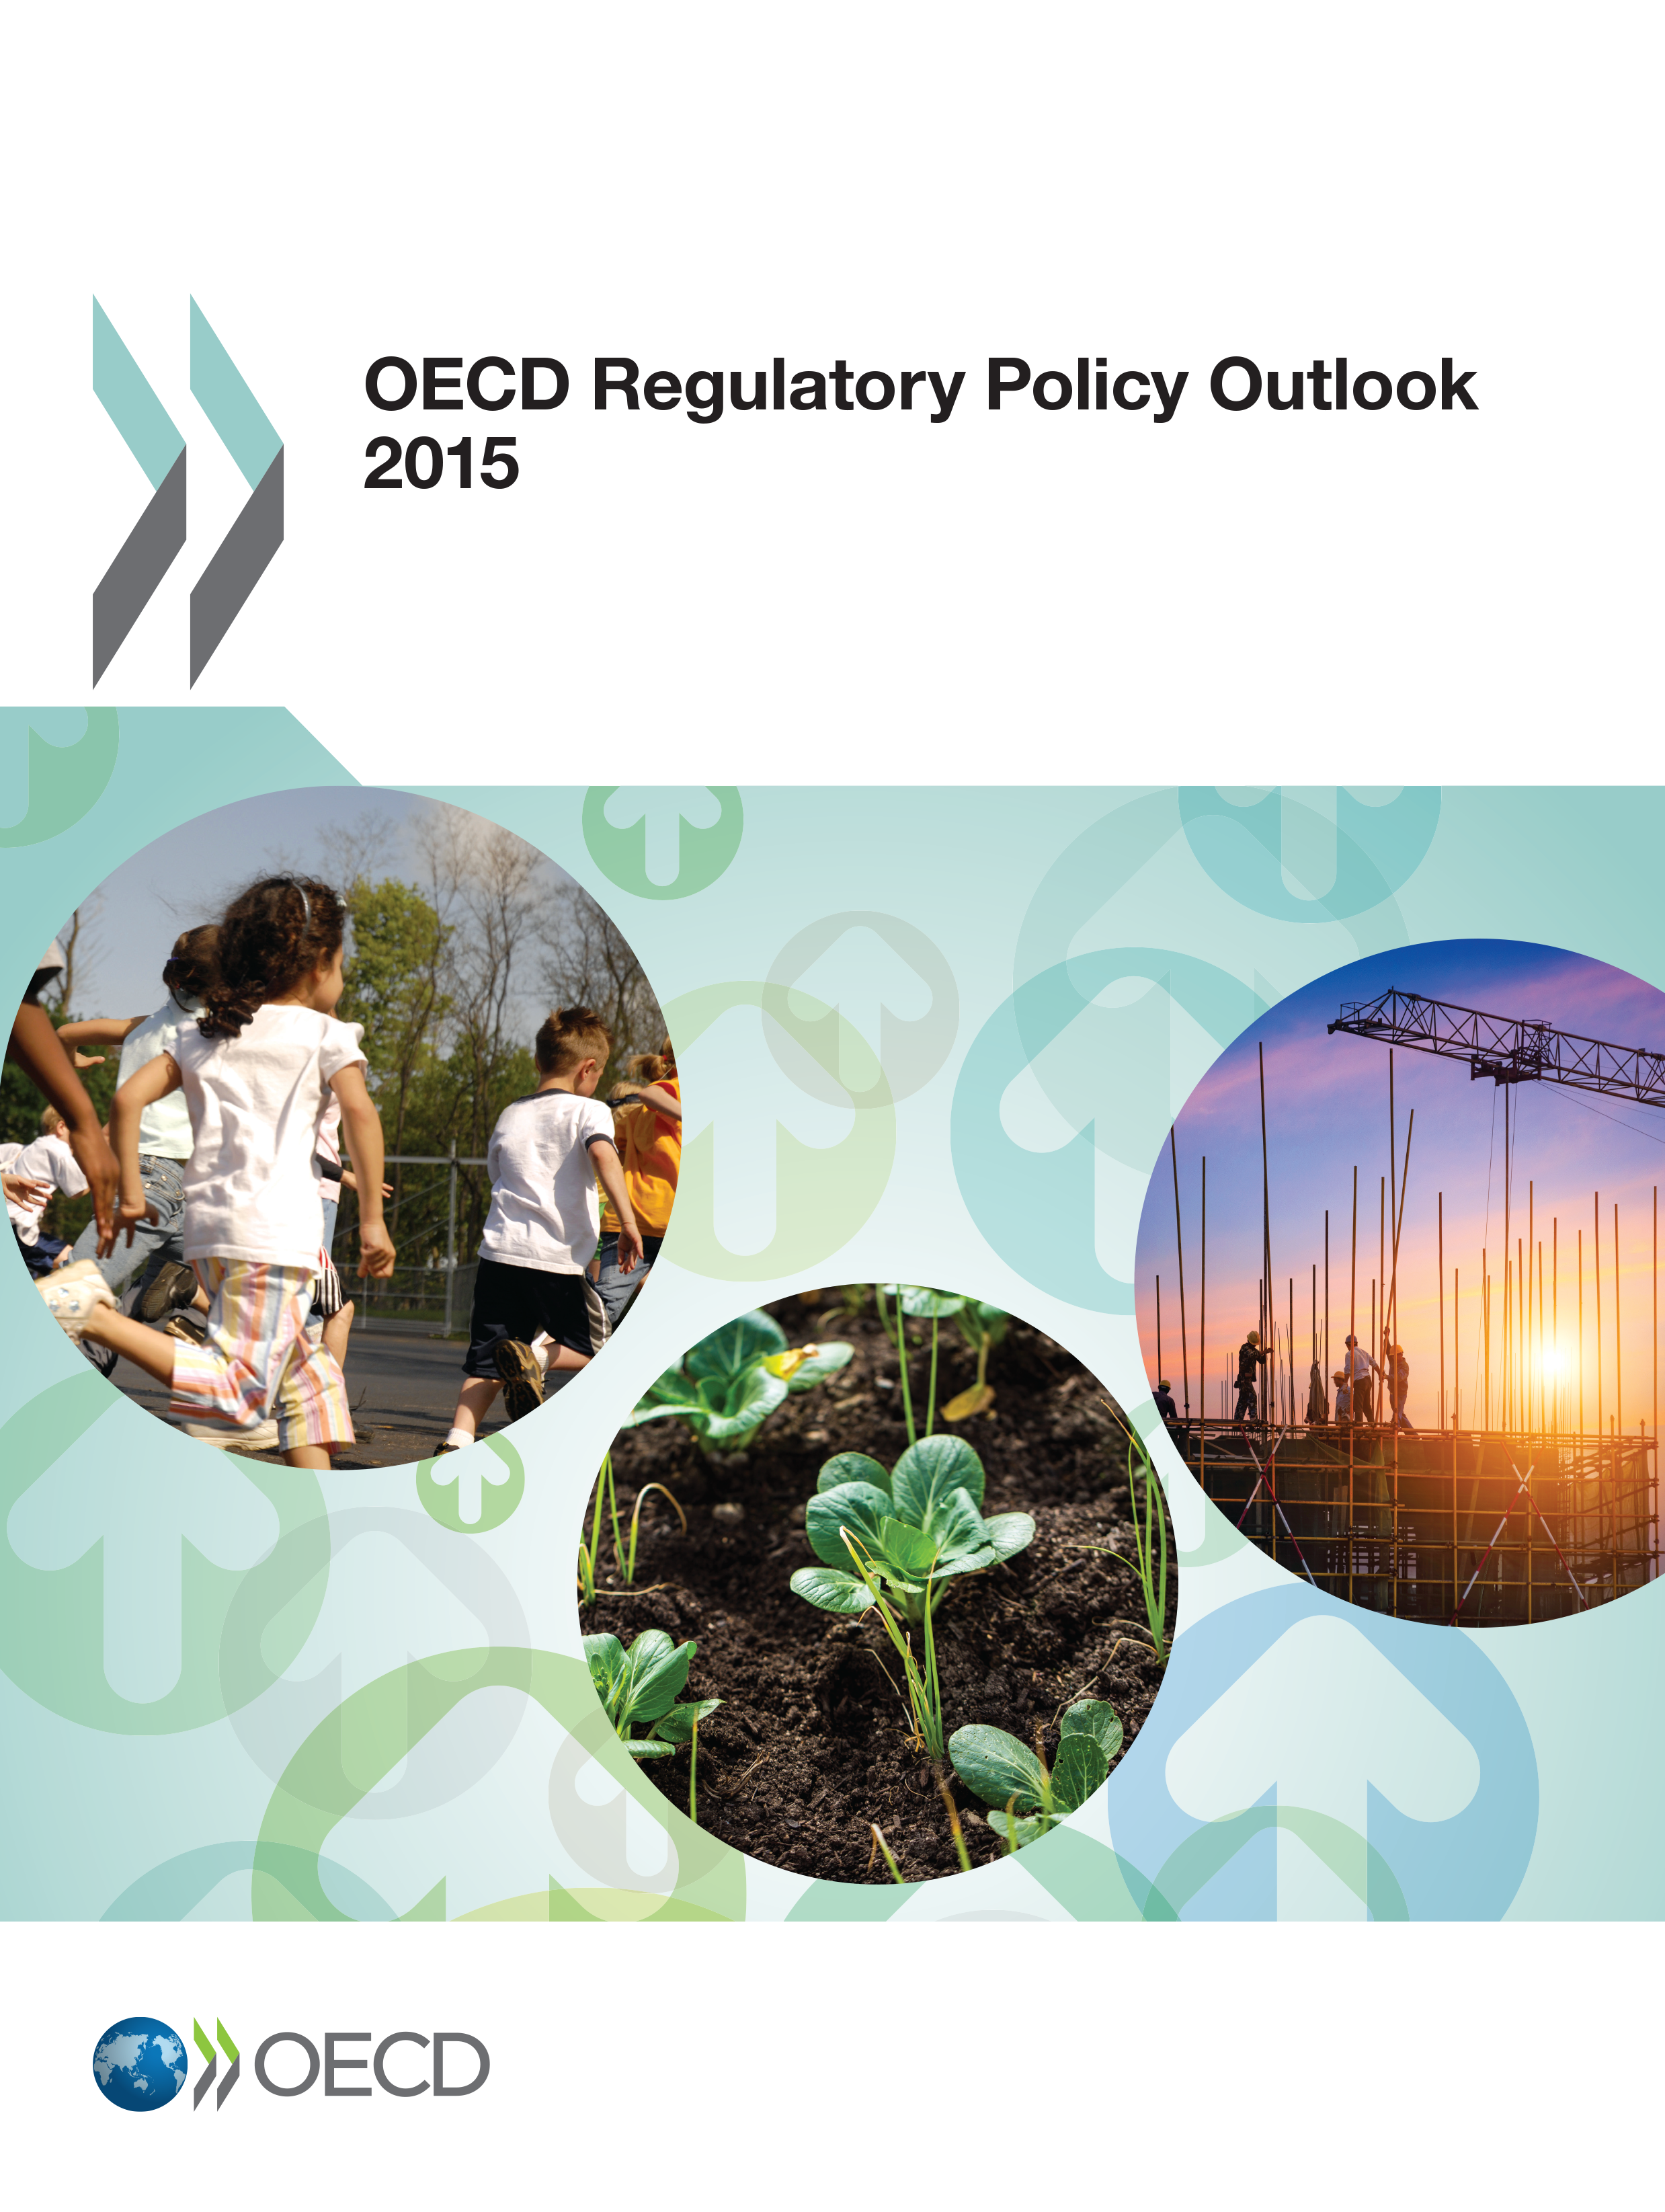 OECD Regulatory Policy Outlook 5 Landprofil SVERIGE Länkar OECD Regulatory Policy Outlook 5: www.oecd.org/publications/oecd- regulatory-policy-outlook-5-97896877-en.